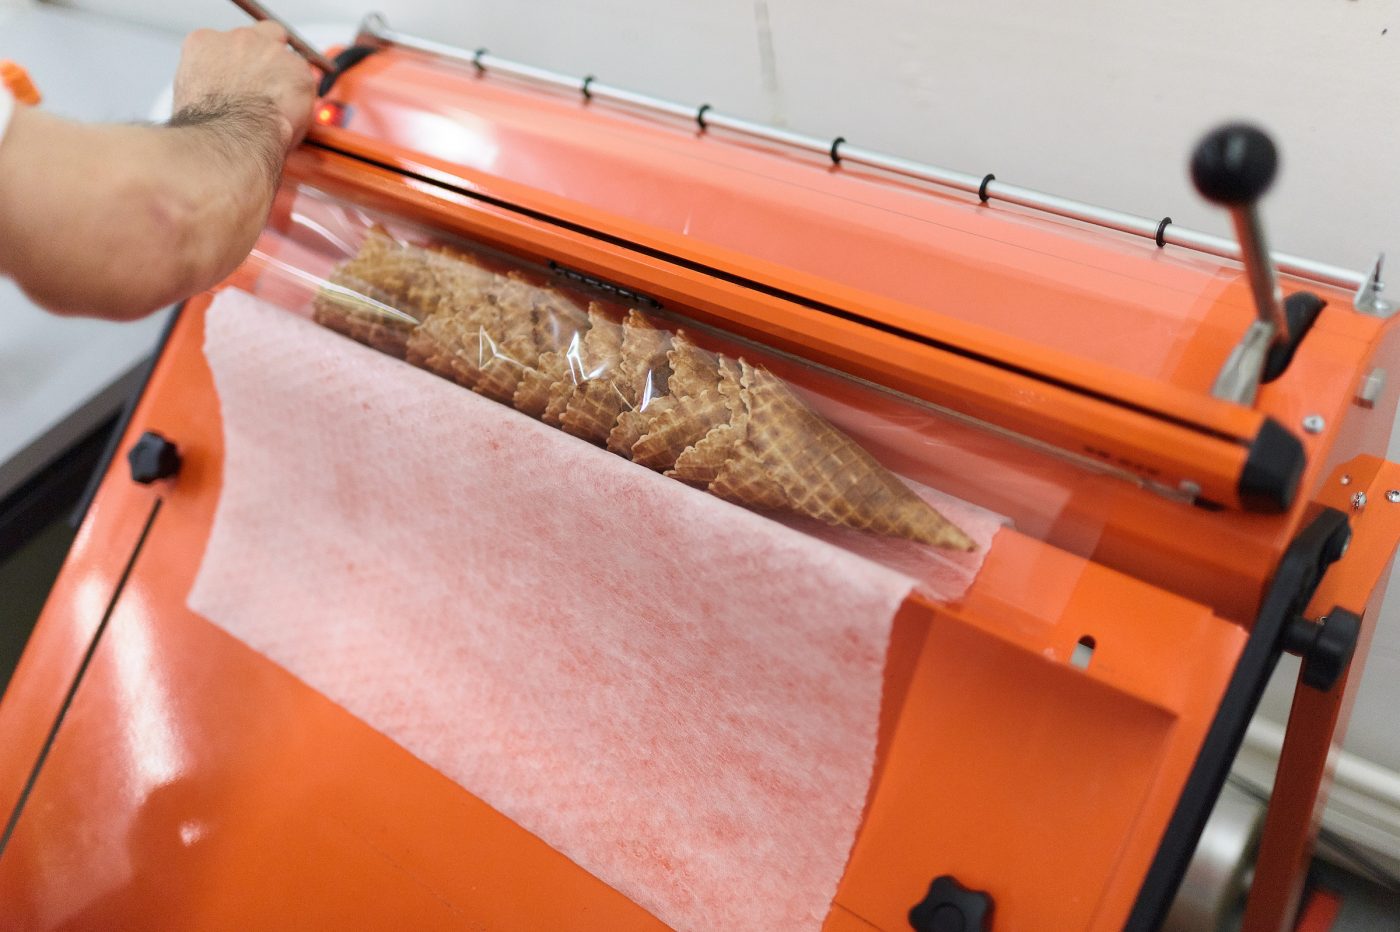 In Folien eingelegte Cornets liegen auf der orangen Verpackungsmaschine bereit zum verschweissen.